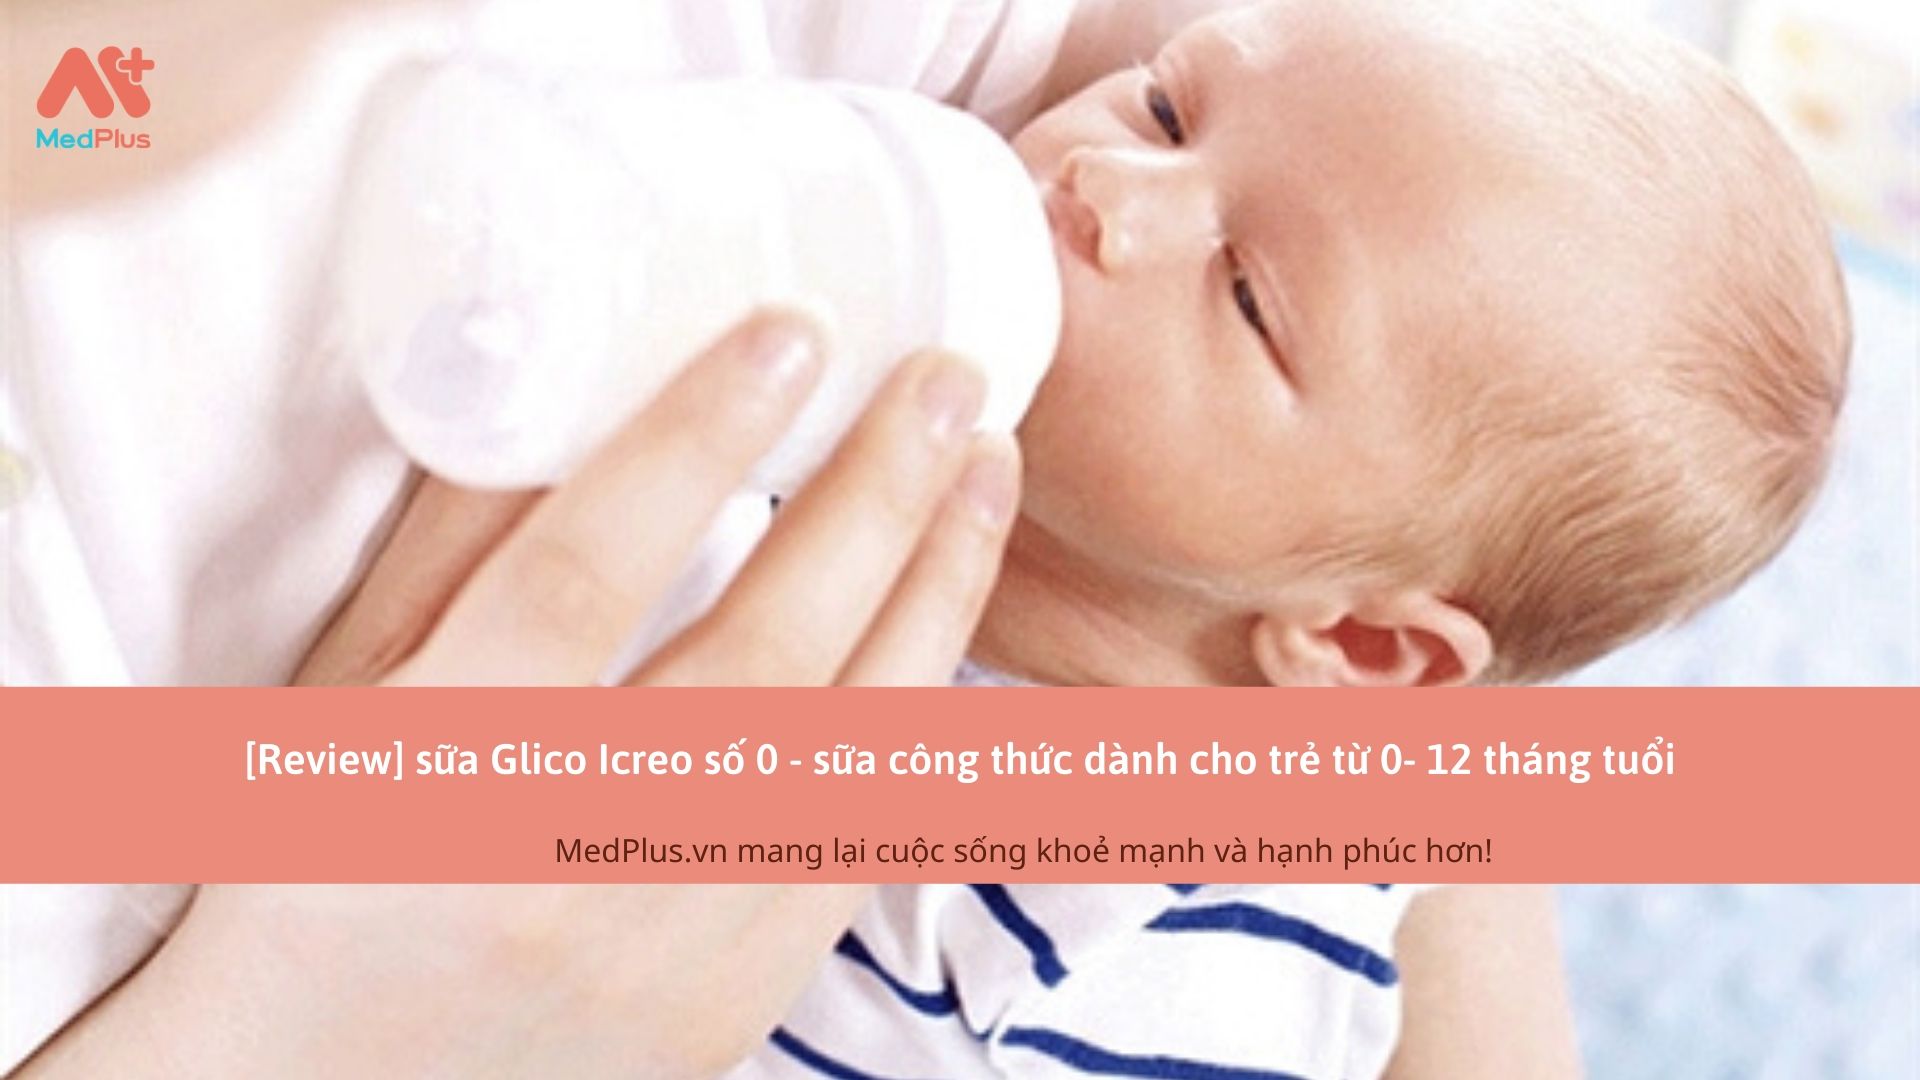 [Review] sữa Glico Icreo số 0 - sữa công thức dành cho trẻ từ 0- 12 tháng tuổi